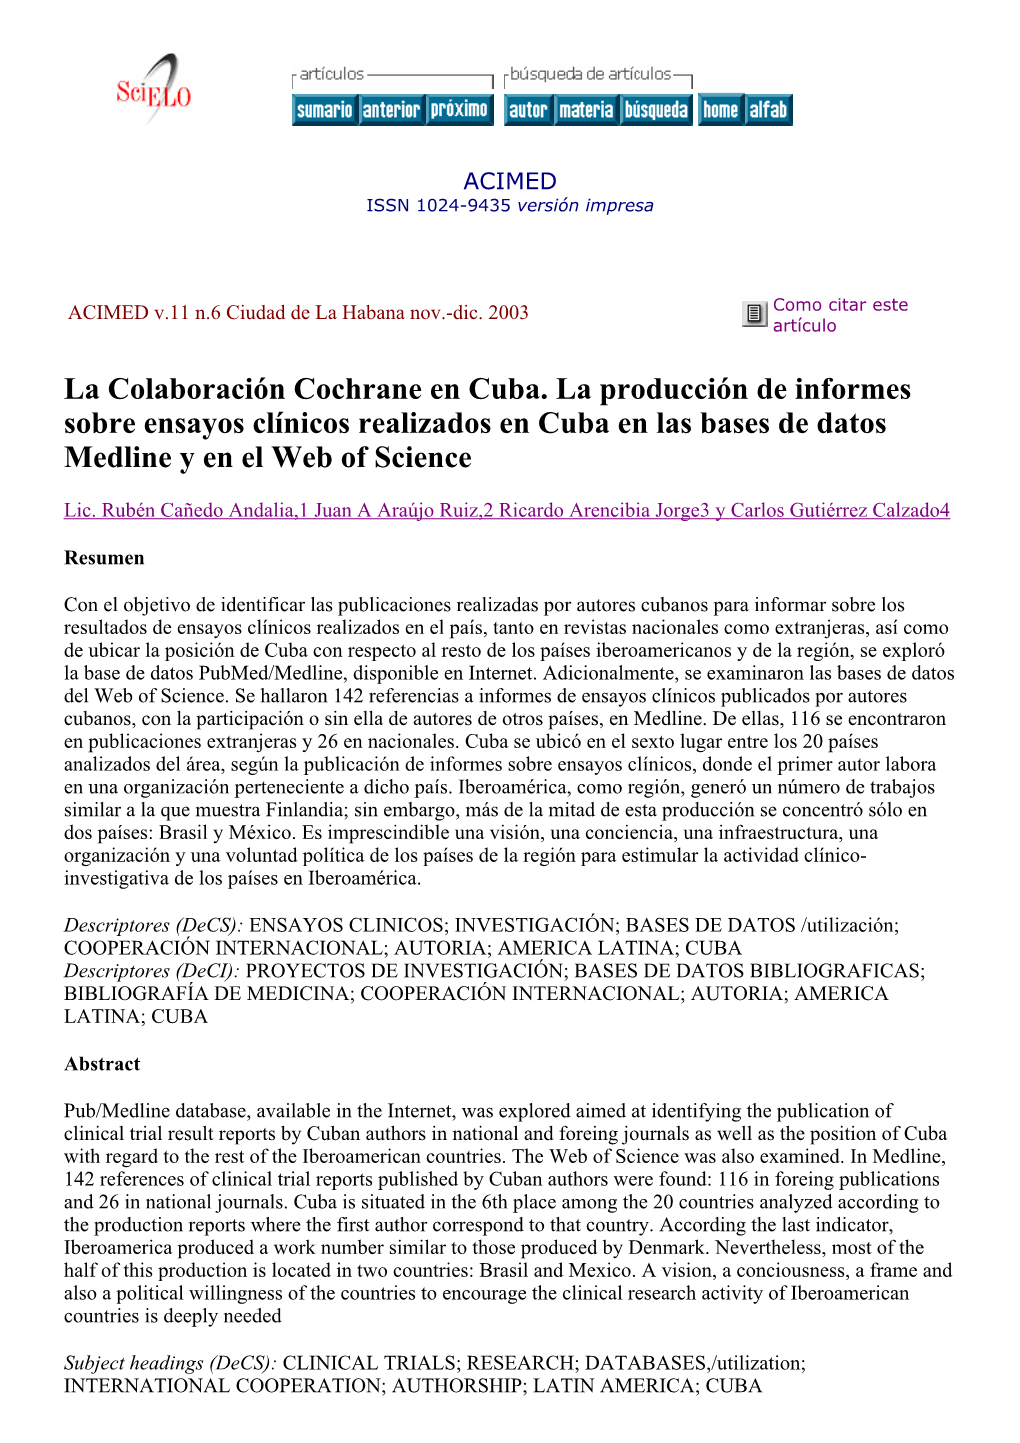 La Colaboración Cochrane En Cuba. La Producción De Informes Sobre Ensayos Clínicos Realizados En Cuba En Las Bases De Datos Medline Y En El Web of Science